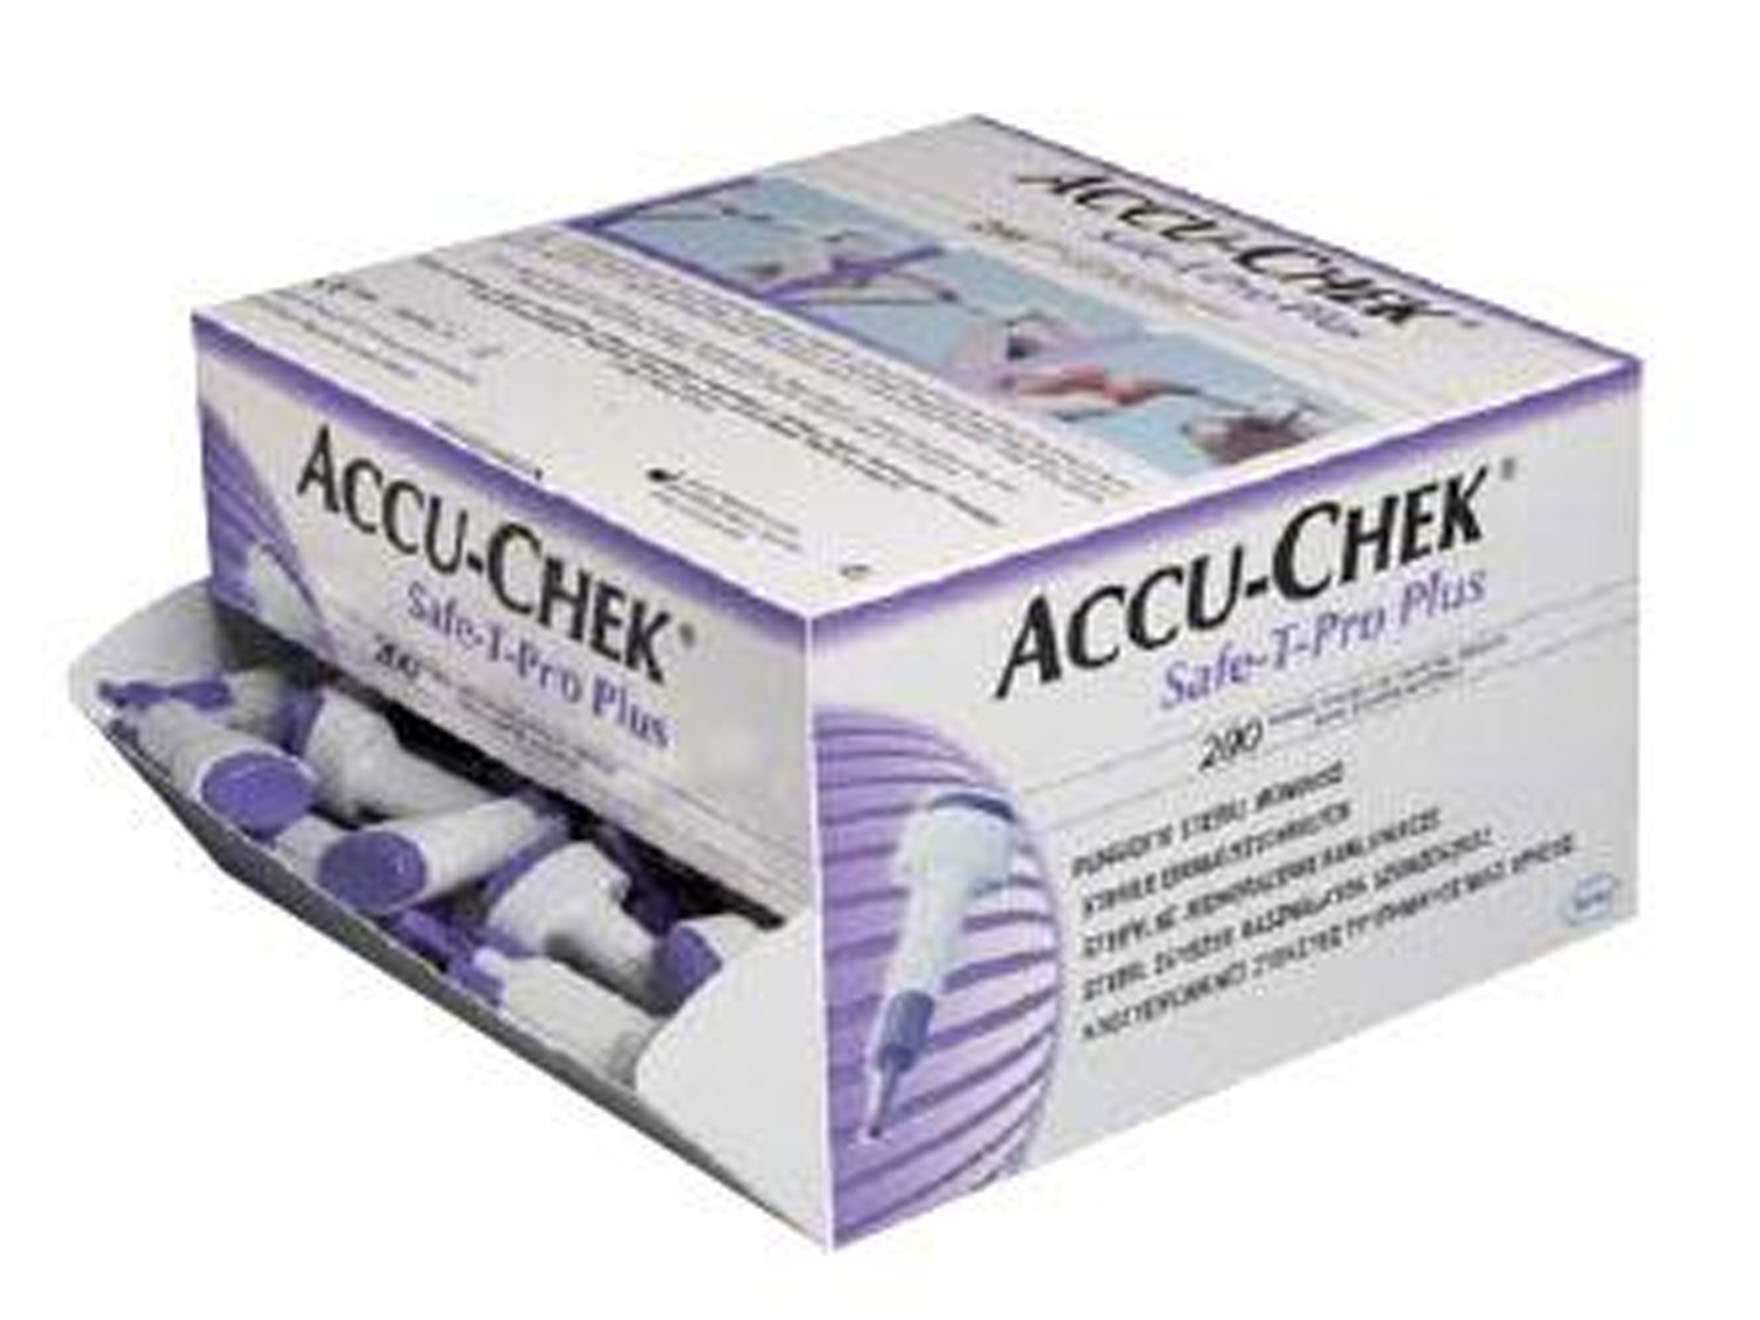 Accu-chek Safe-T-Pro Plus lancetten - 1 x 200 st